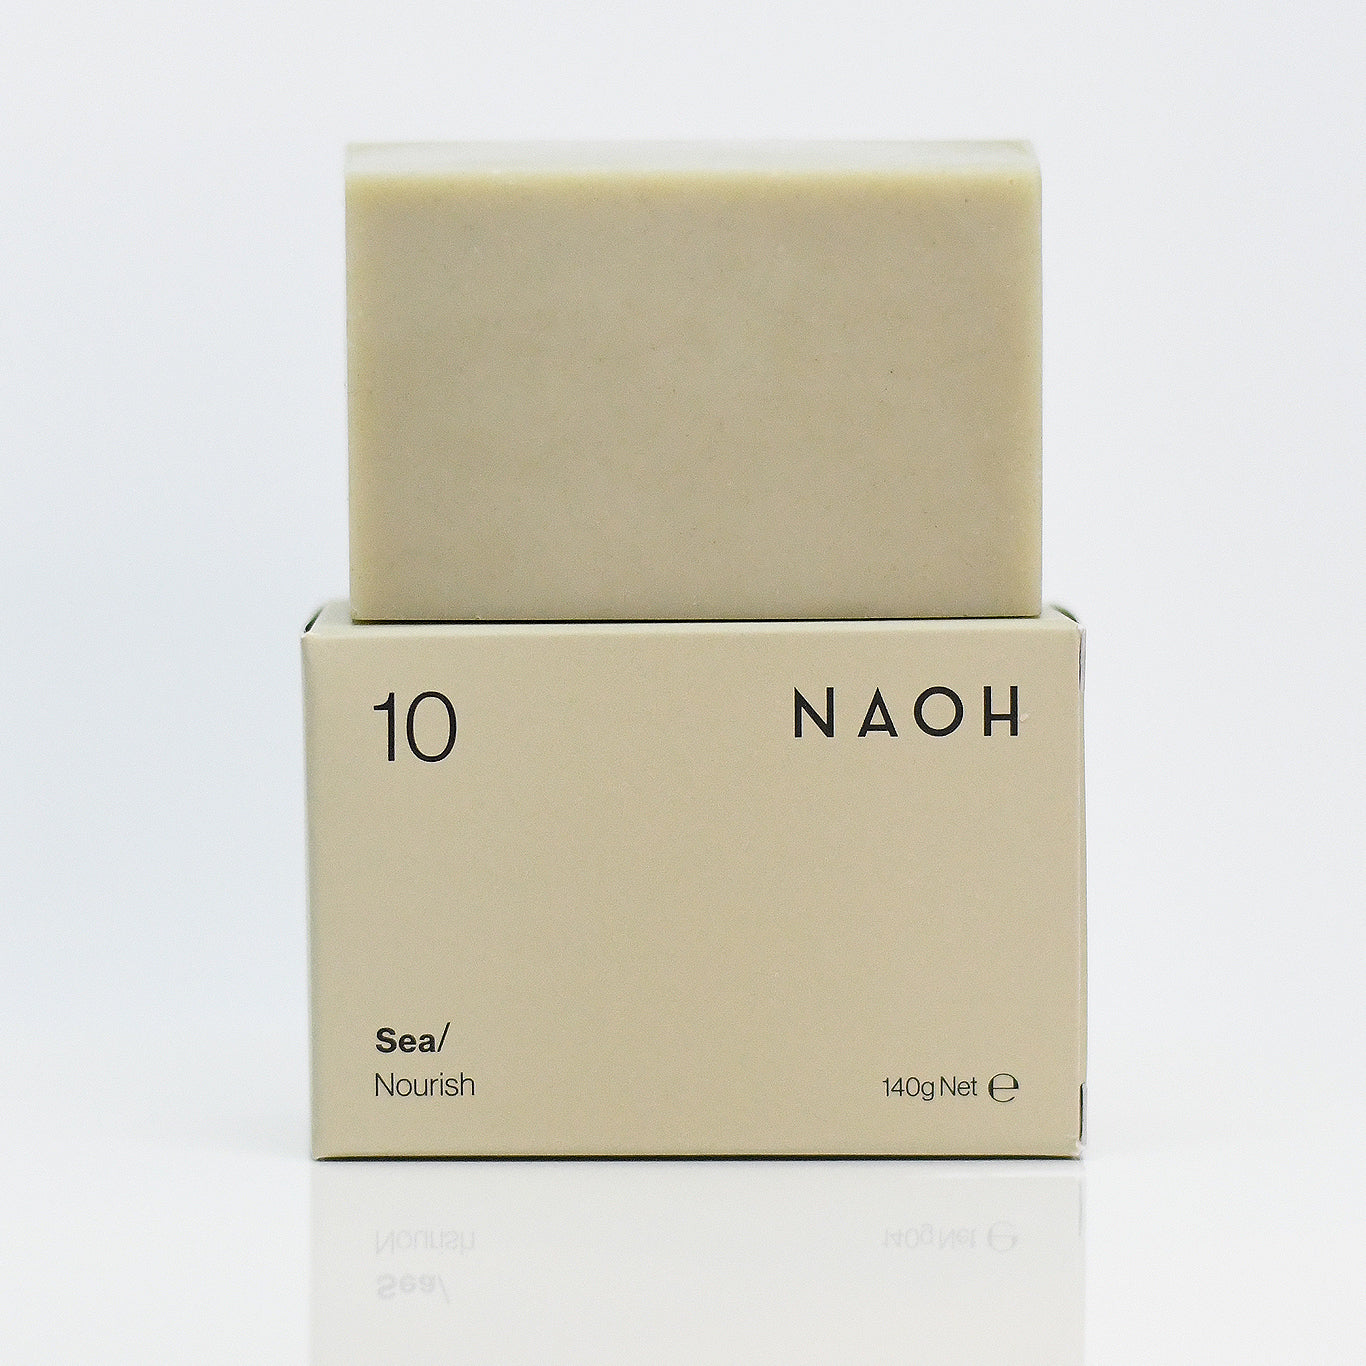 NAOH Sea soap bar